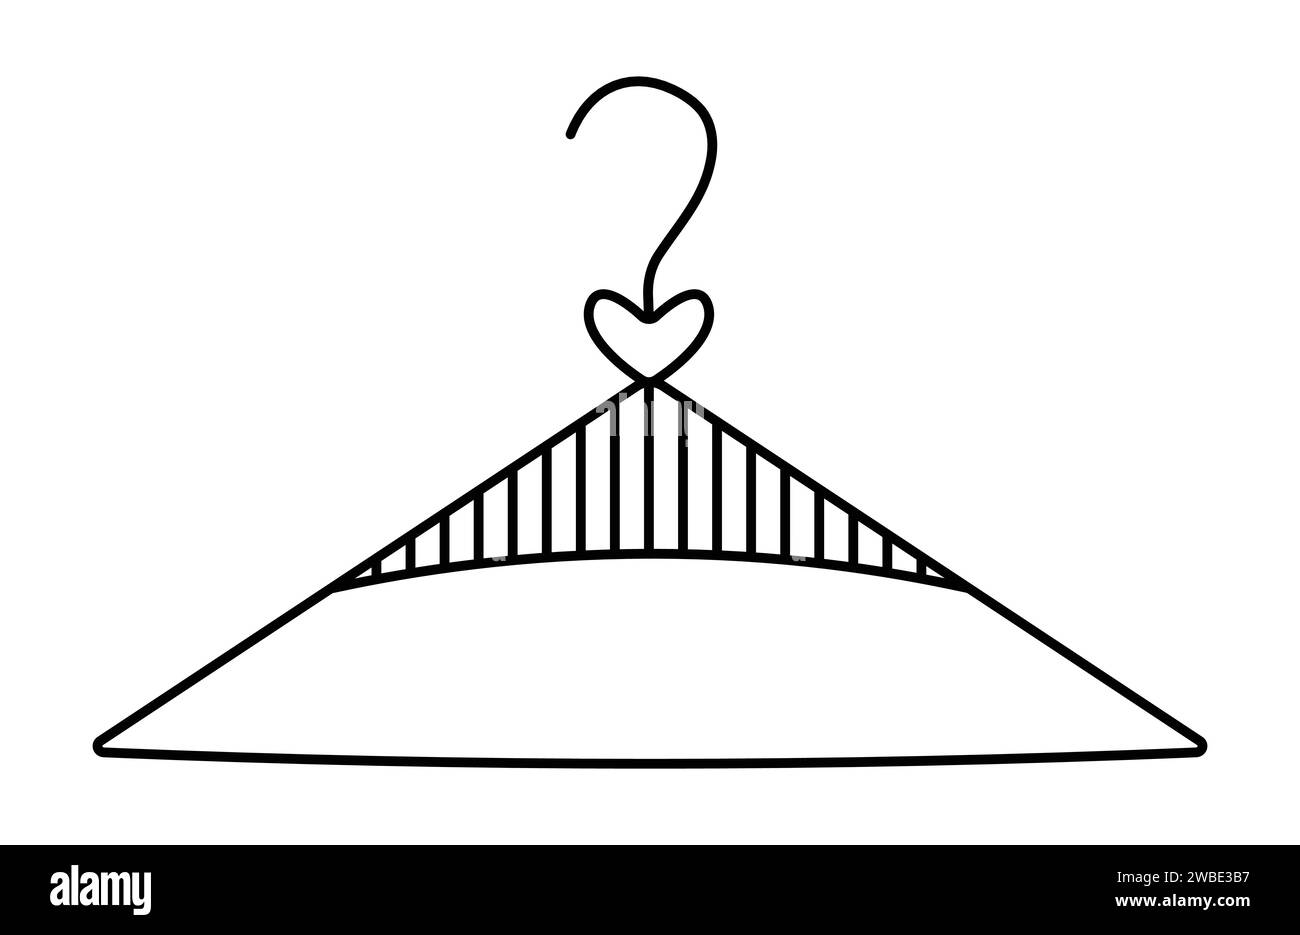 Simbolo di appendiabiti singolo, segno di appendiabiti con linea nera, semplice illustrazione di appendiabiti con strisce e cuore. Tratto modificabile, pixel Perfect ve Illustrazione Vettoriale